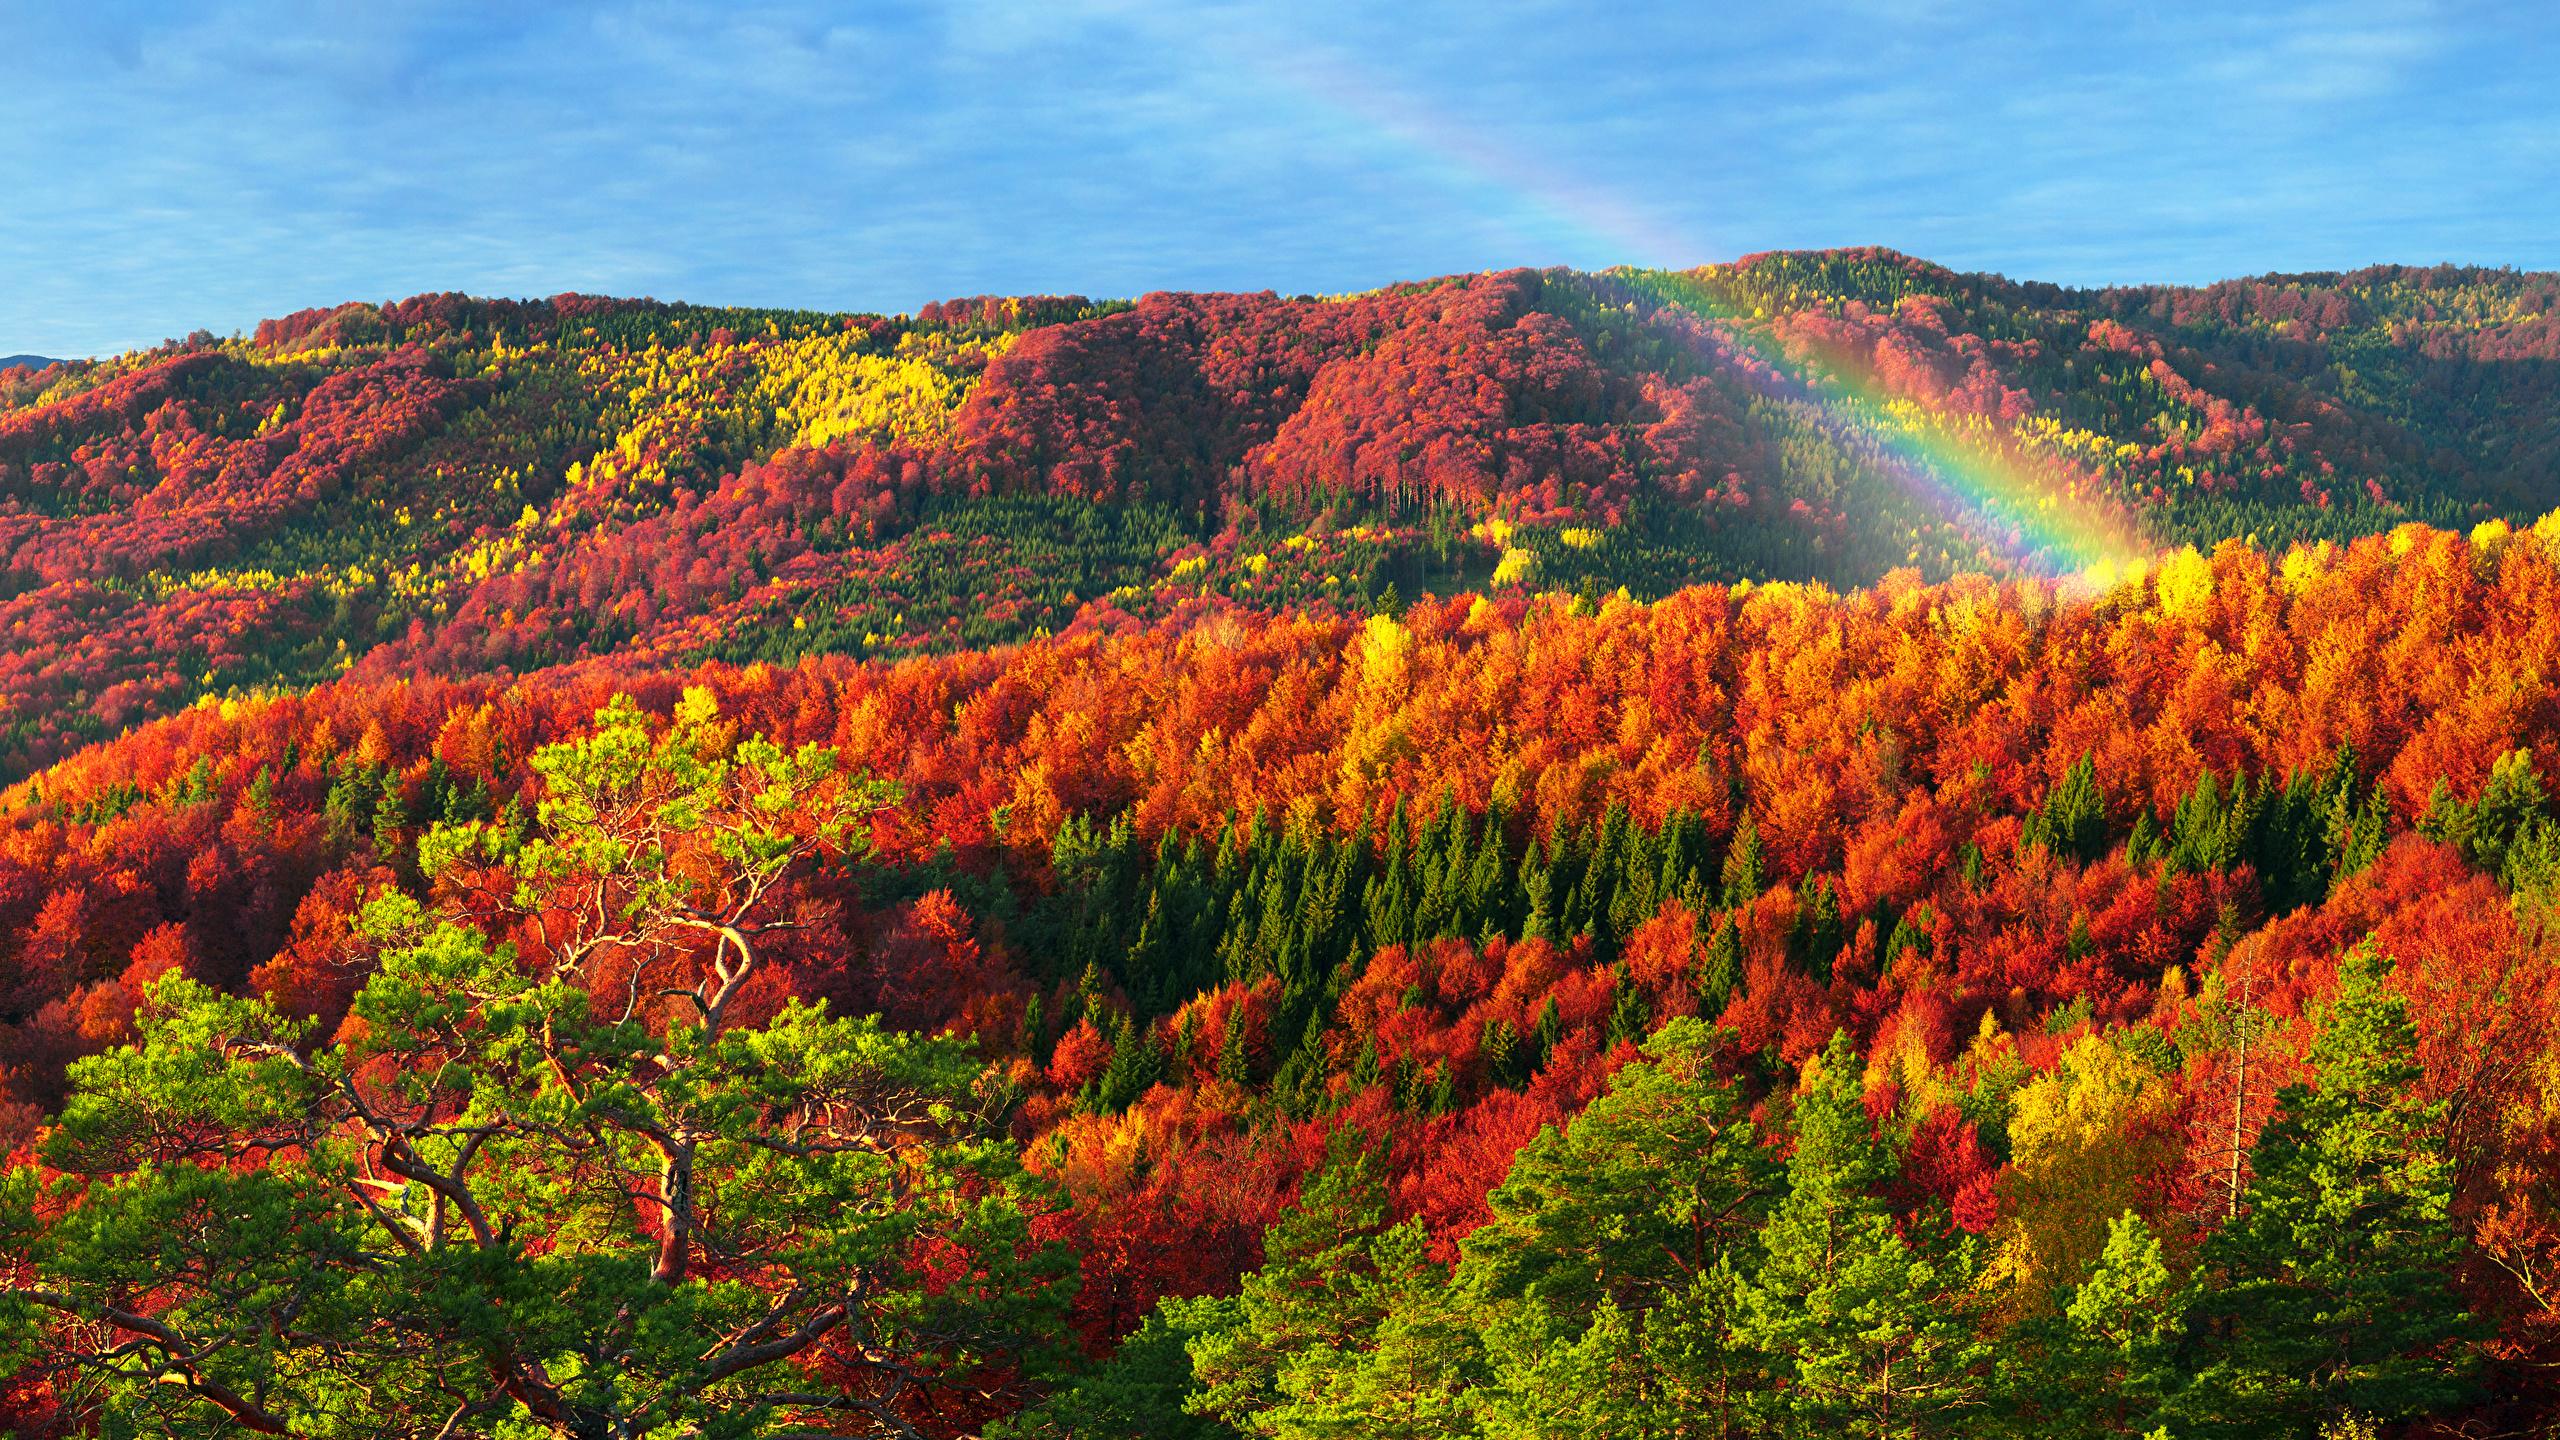 Image Zakarpattia Carpathians Ukraine Autumn Nature 2560x1440